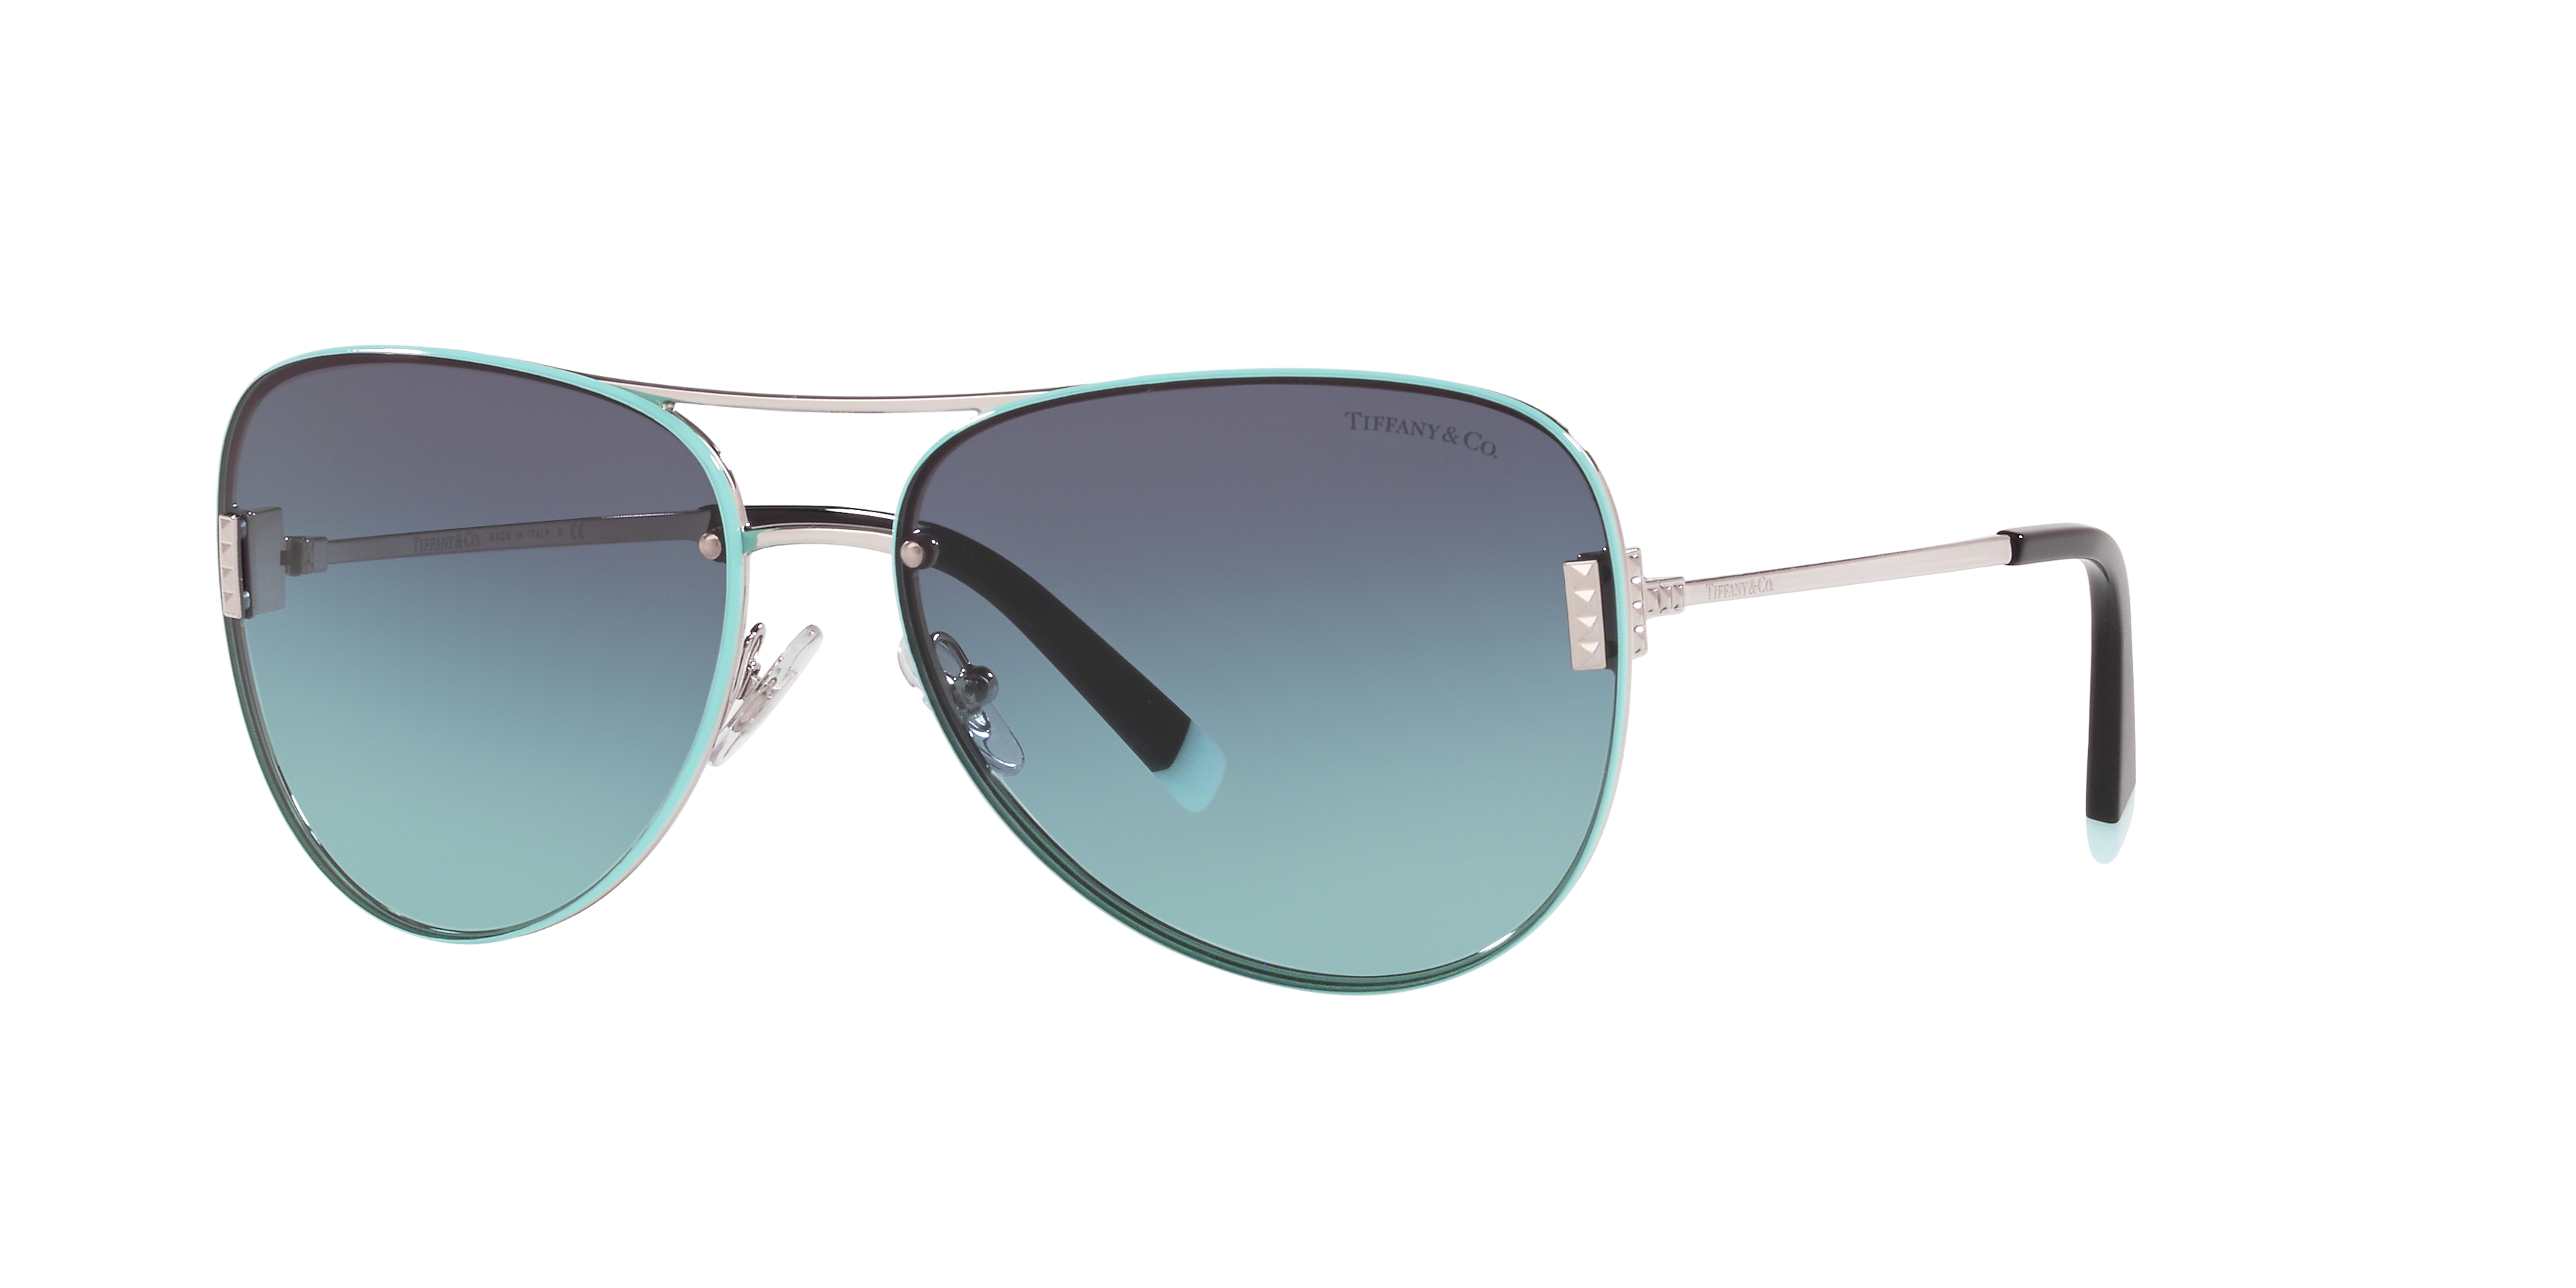 Angle_Left01 Tiffany & Co TF 3066 Sunglasses Blue / Grey